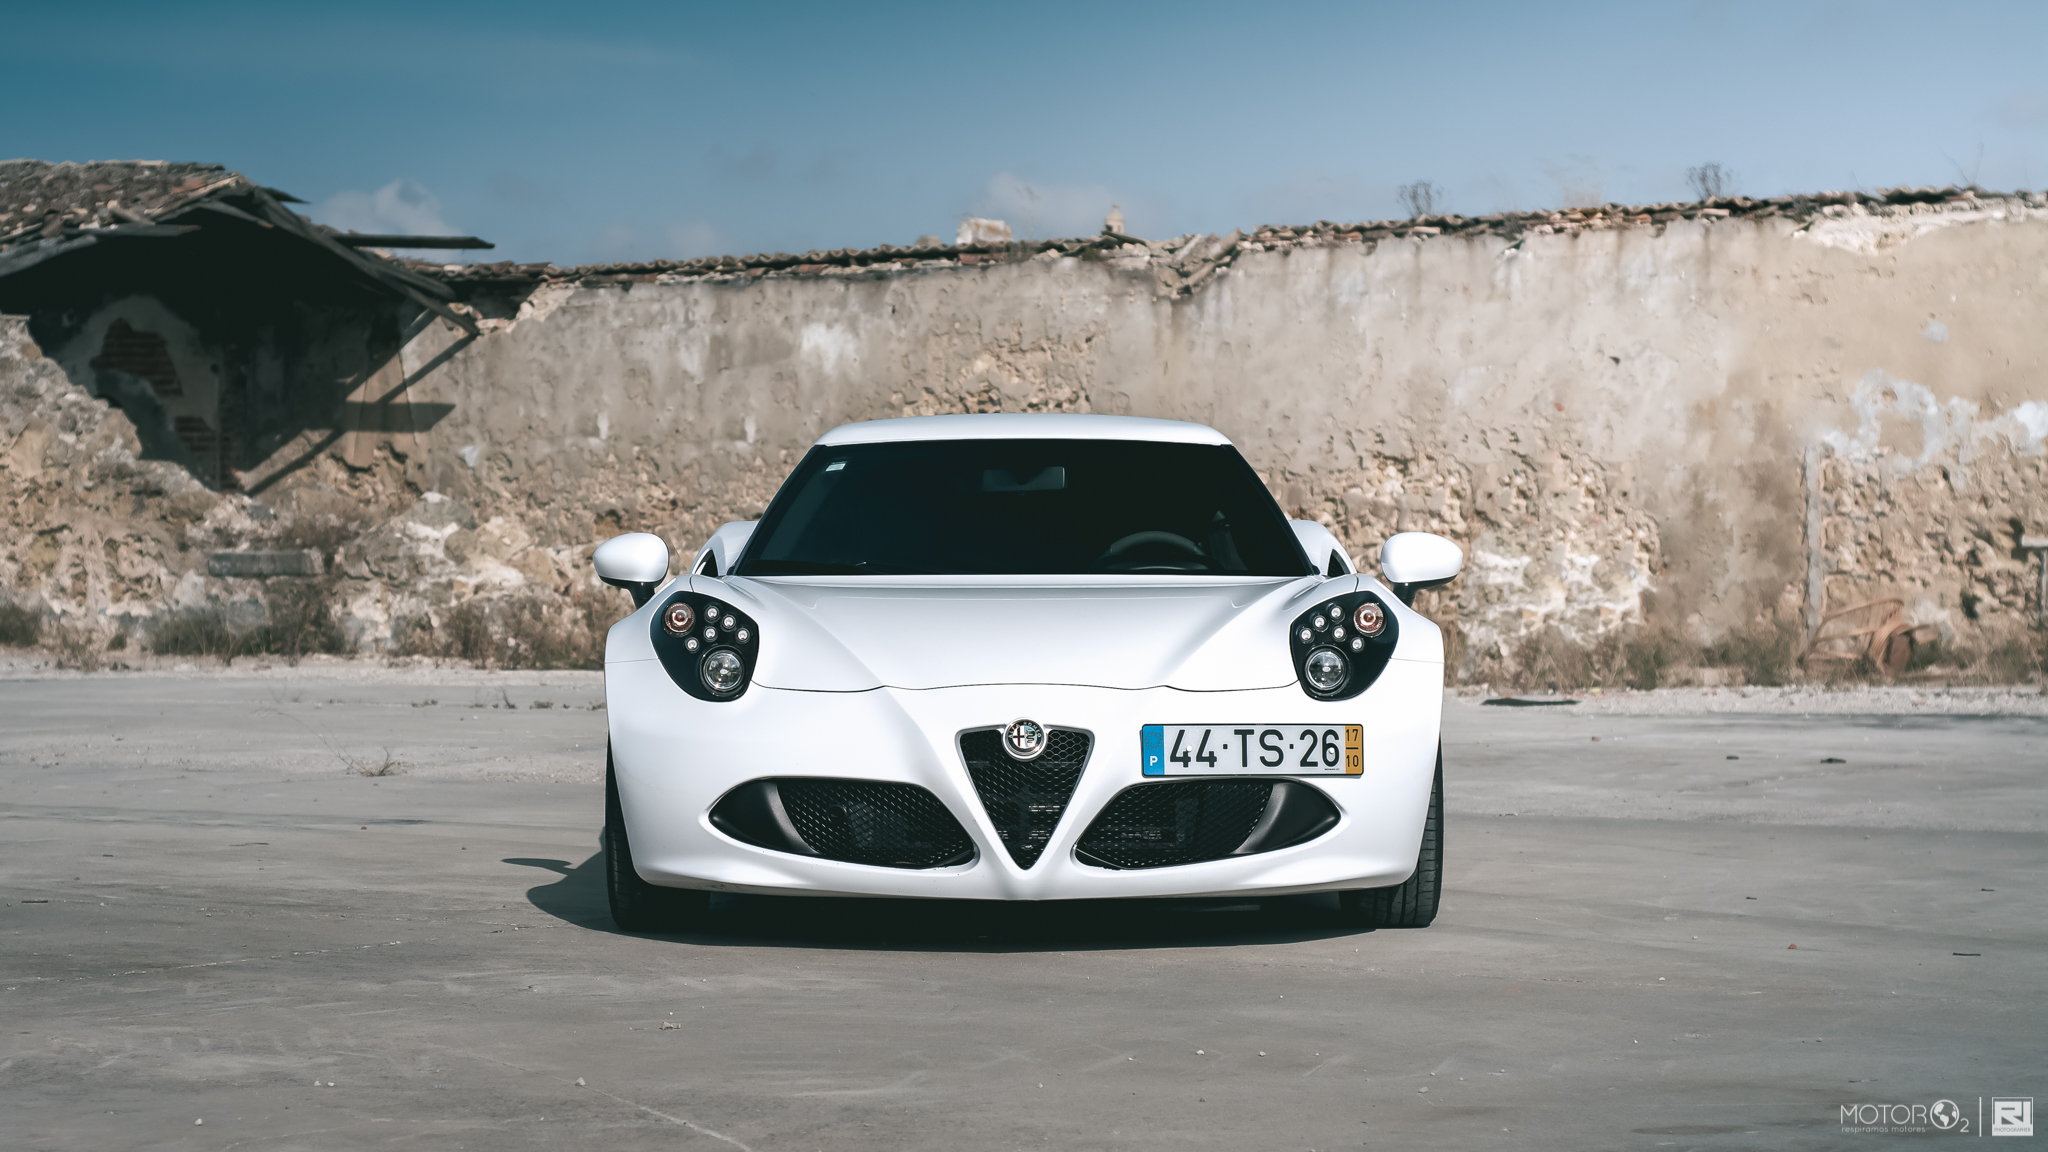 Alfa Romeo repensa estratégia e deixa cair GTV e 8C em prol dos SUV